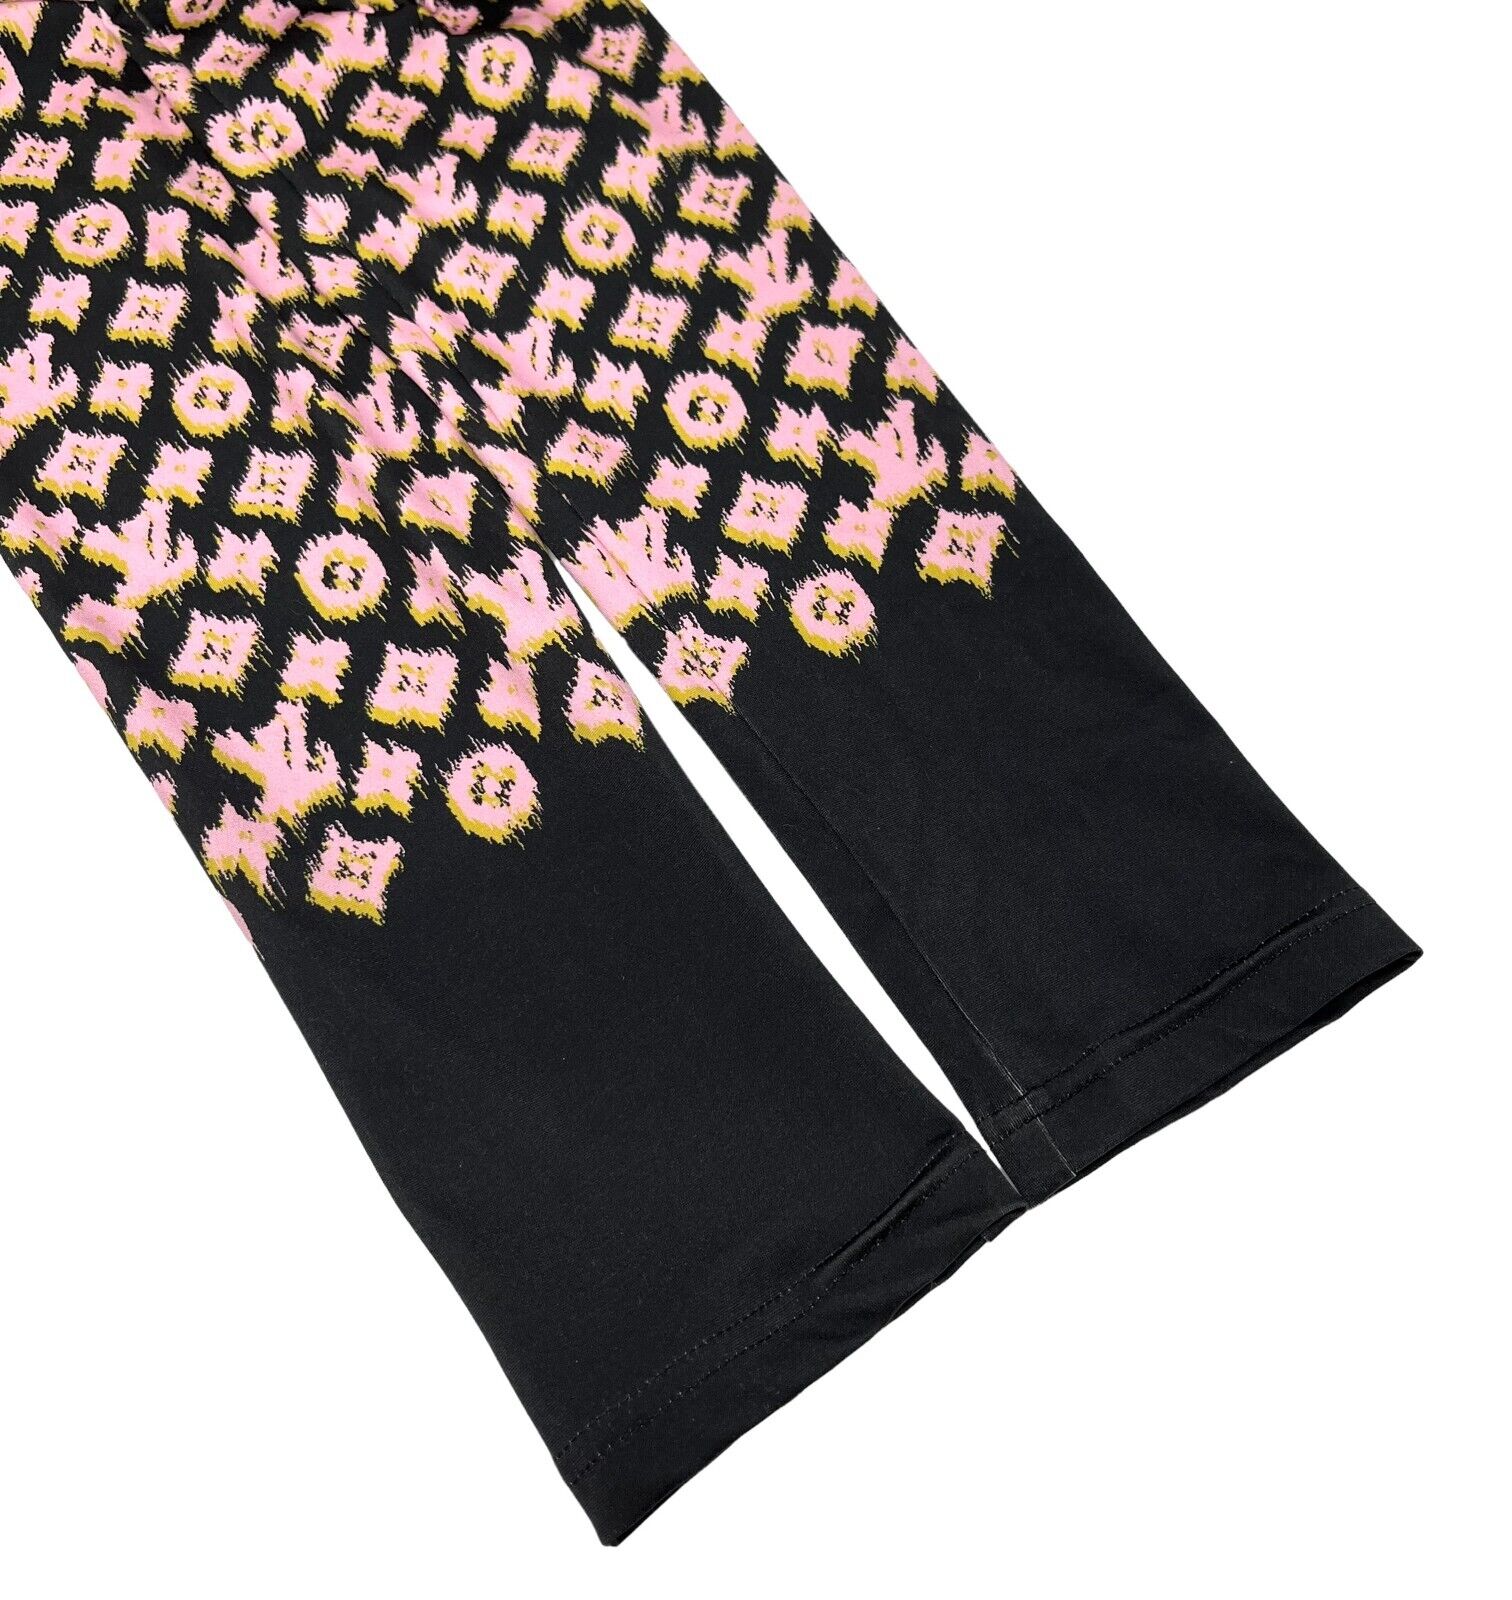 LOUIS VUITTON Vintage Monogram Logo Leggings Pants #36 Nylon Black Pink RankAB+